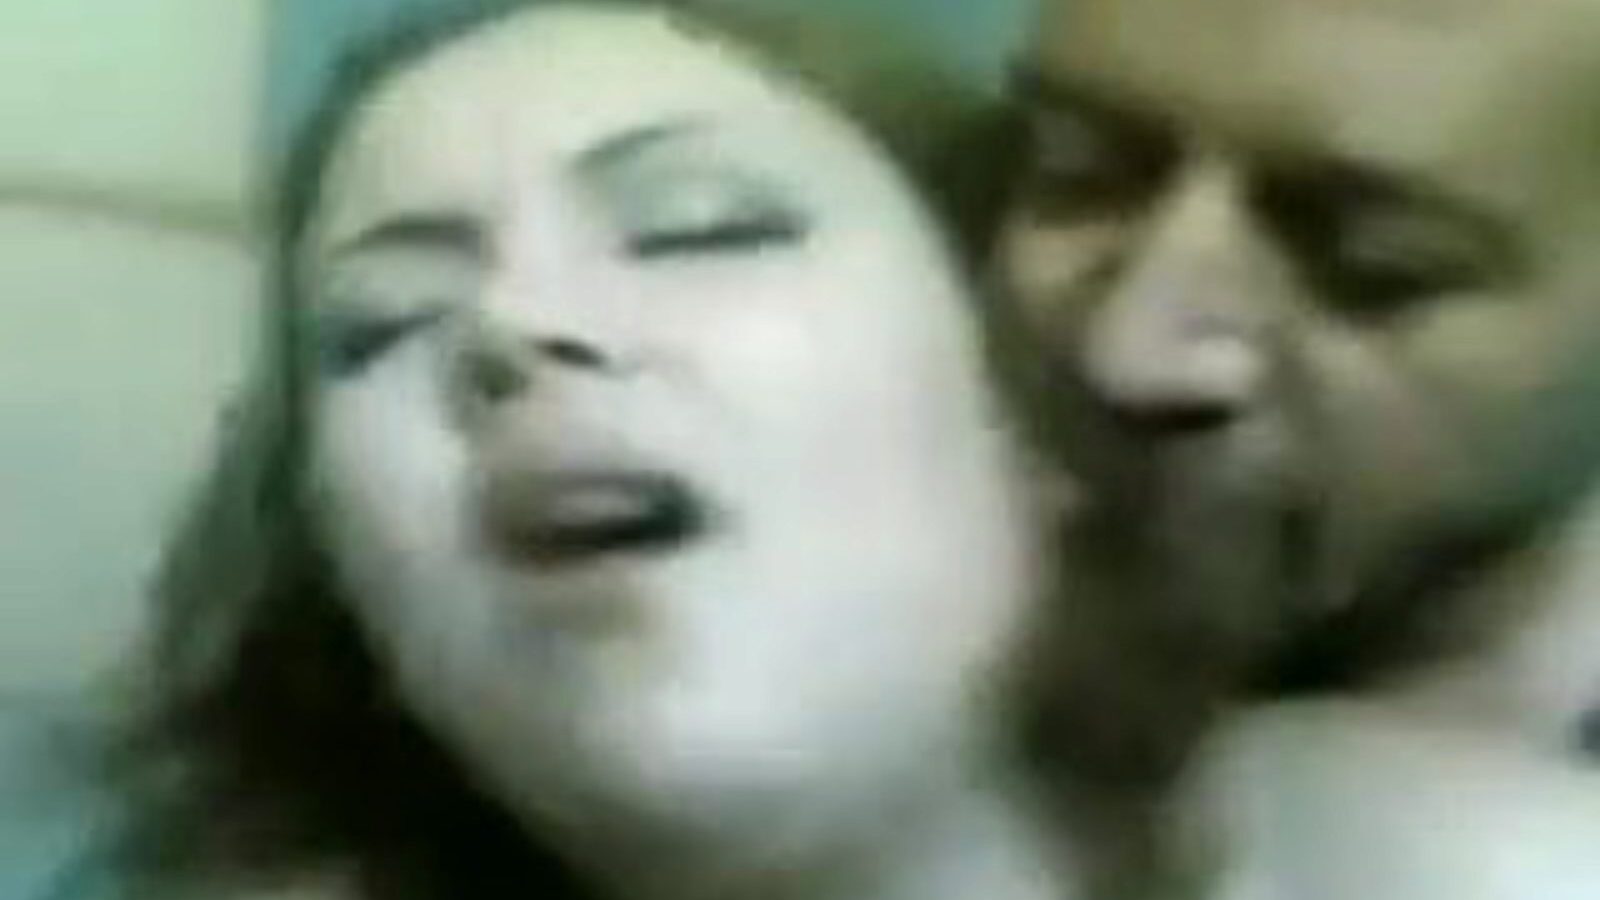 madame lily: free sixty-nine porn video 07 - xhamster mira el clip de hacer el amor de madame lily tube gratis para todos en xhamster, con el grupo superior de episodios de videos porno de árabes egipcios, 69 y culos grandes